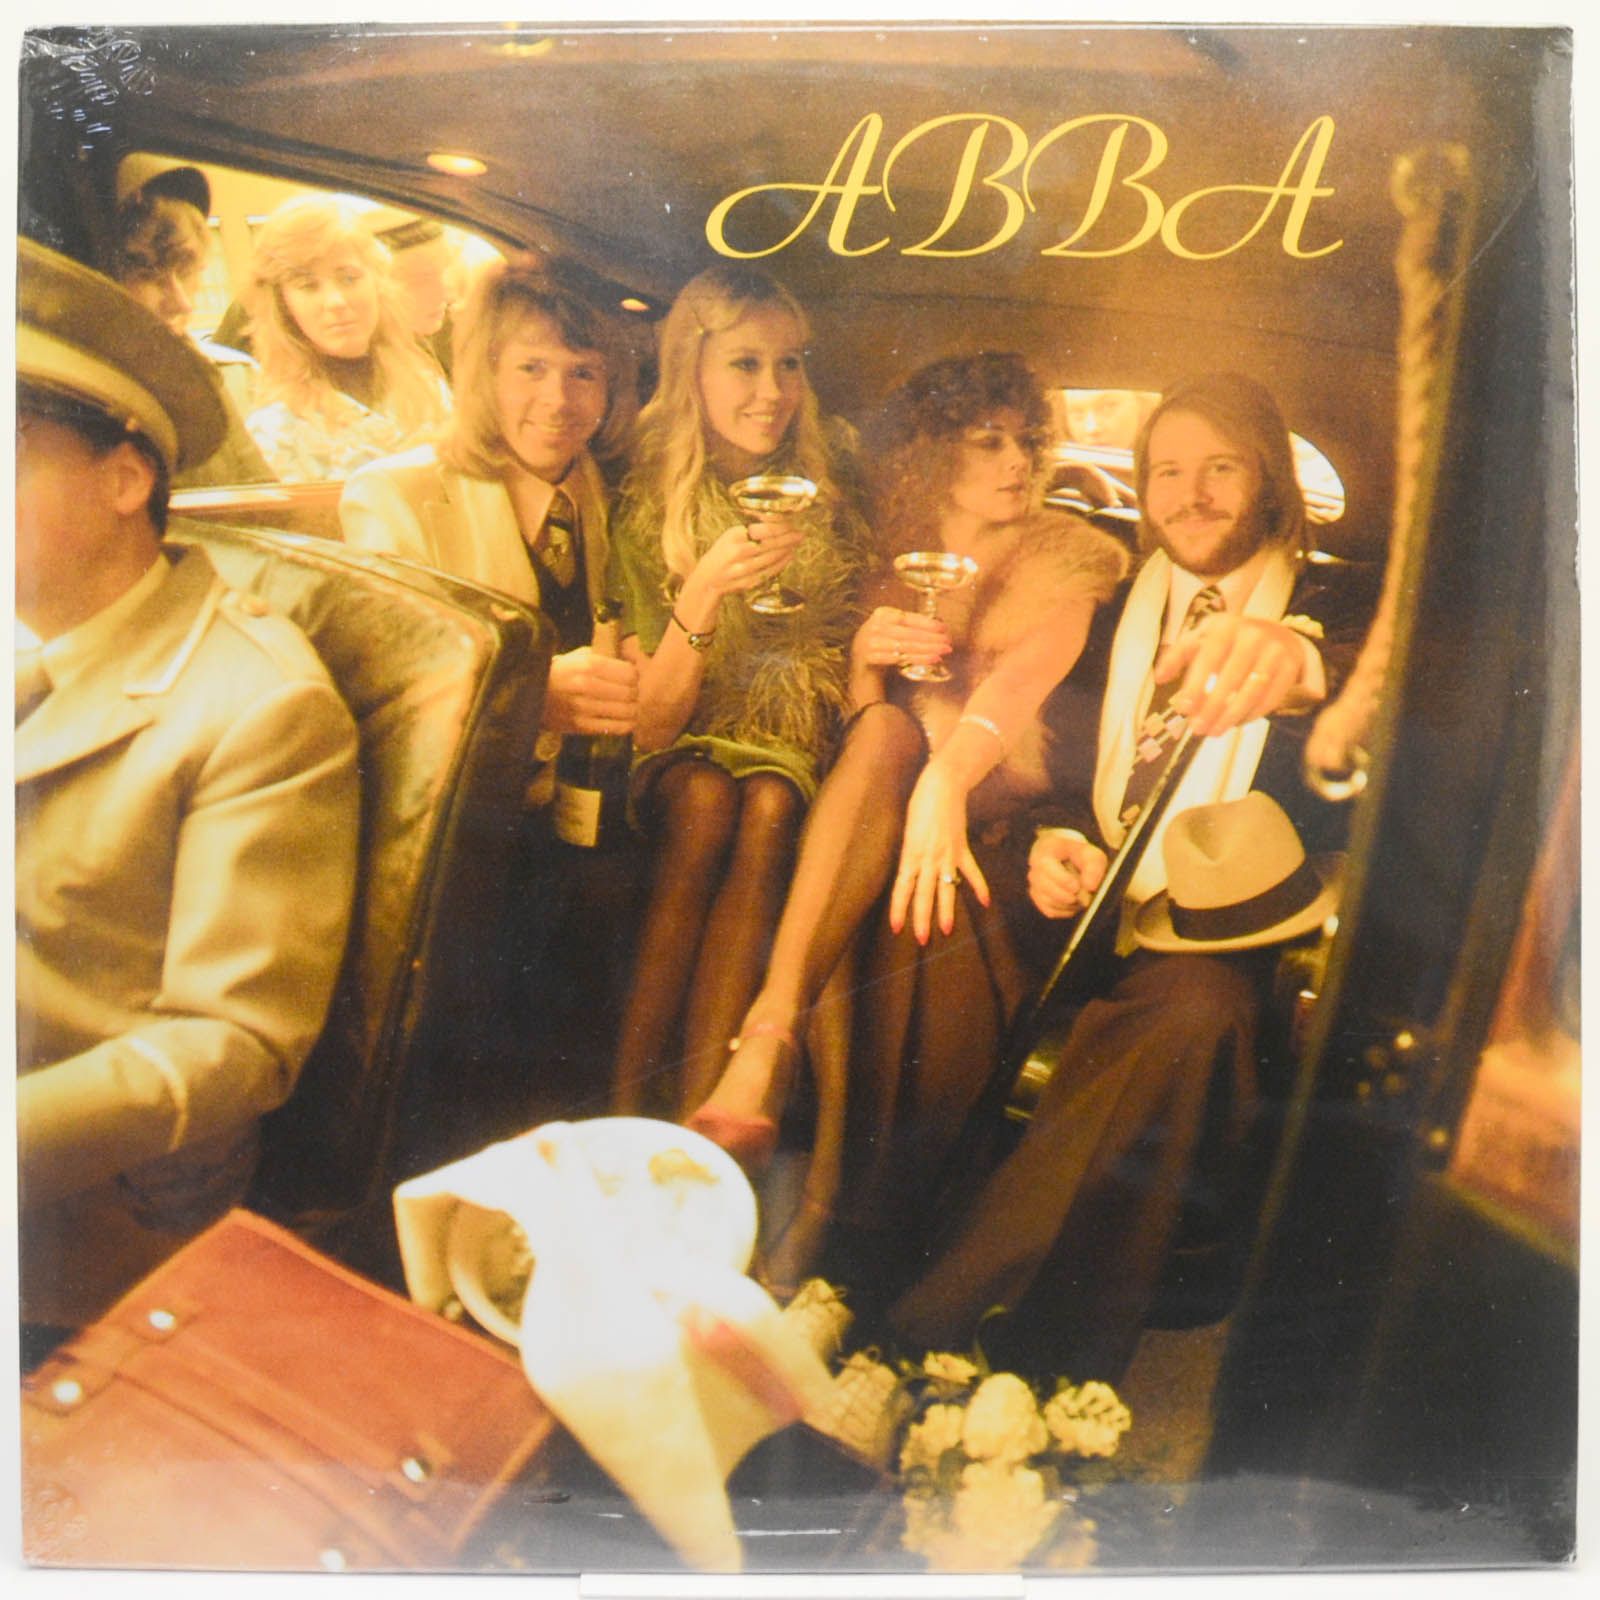 ABBA — ABBA, 1975